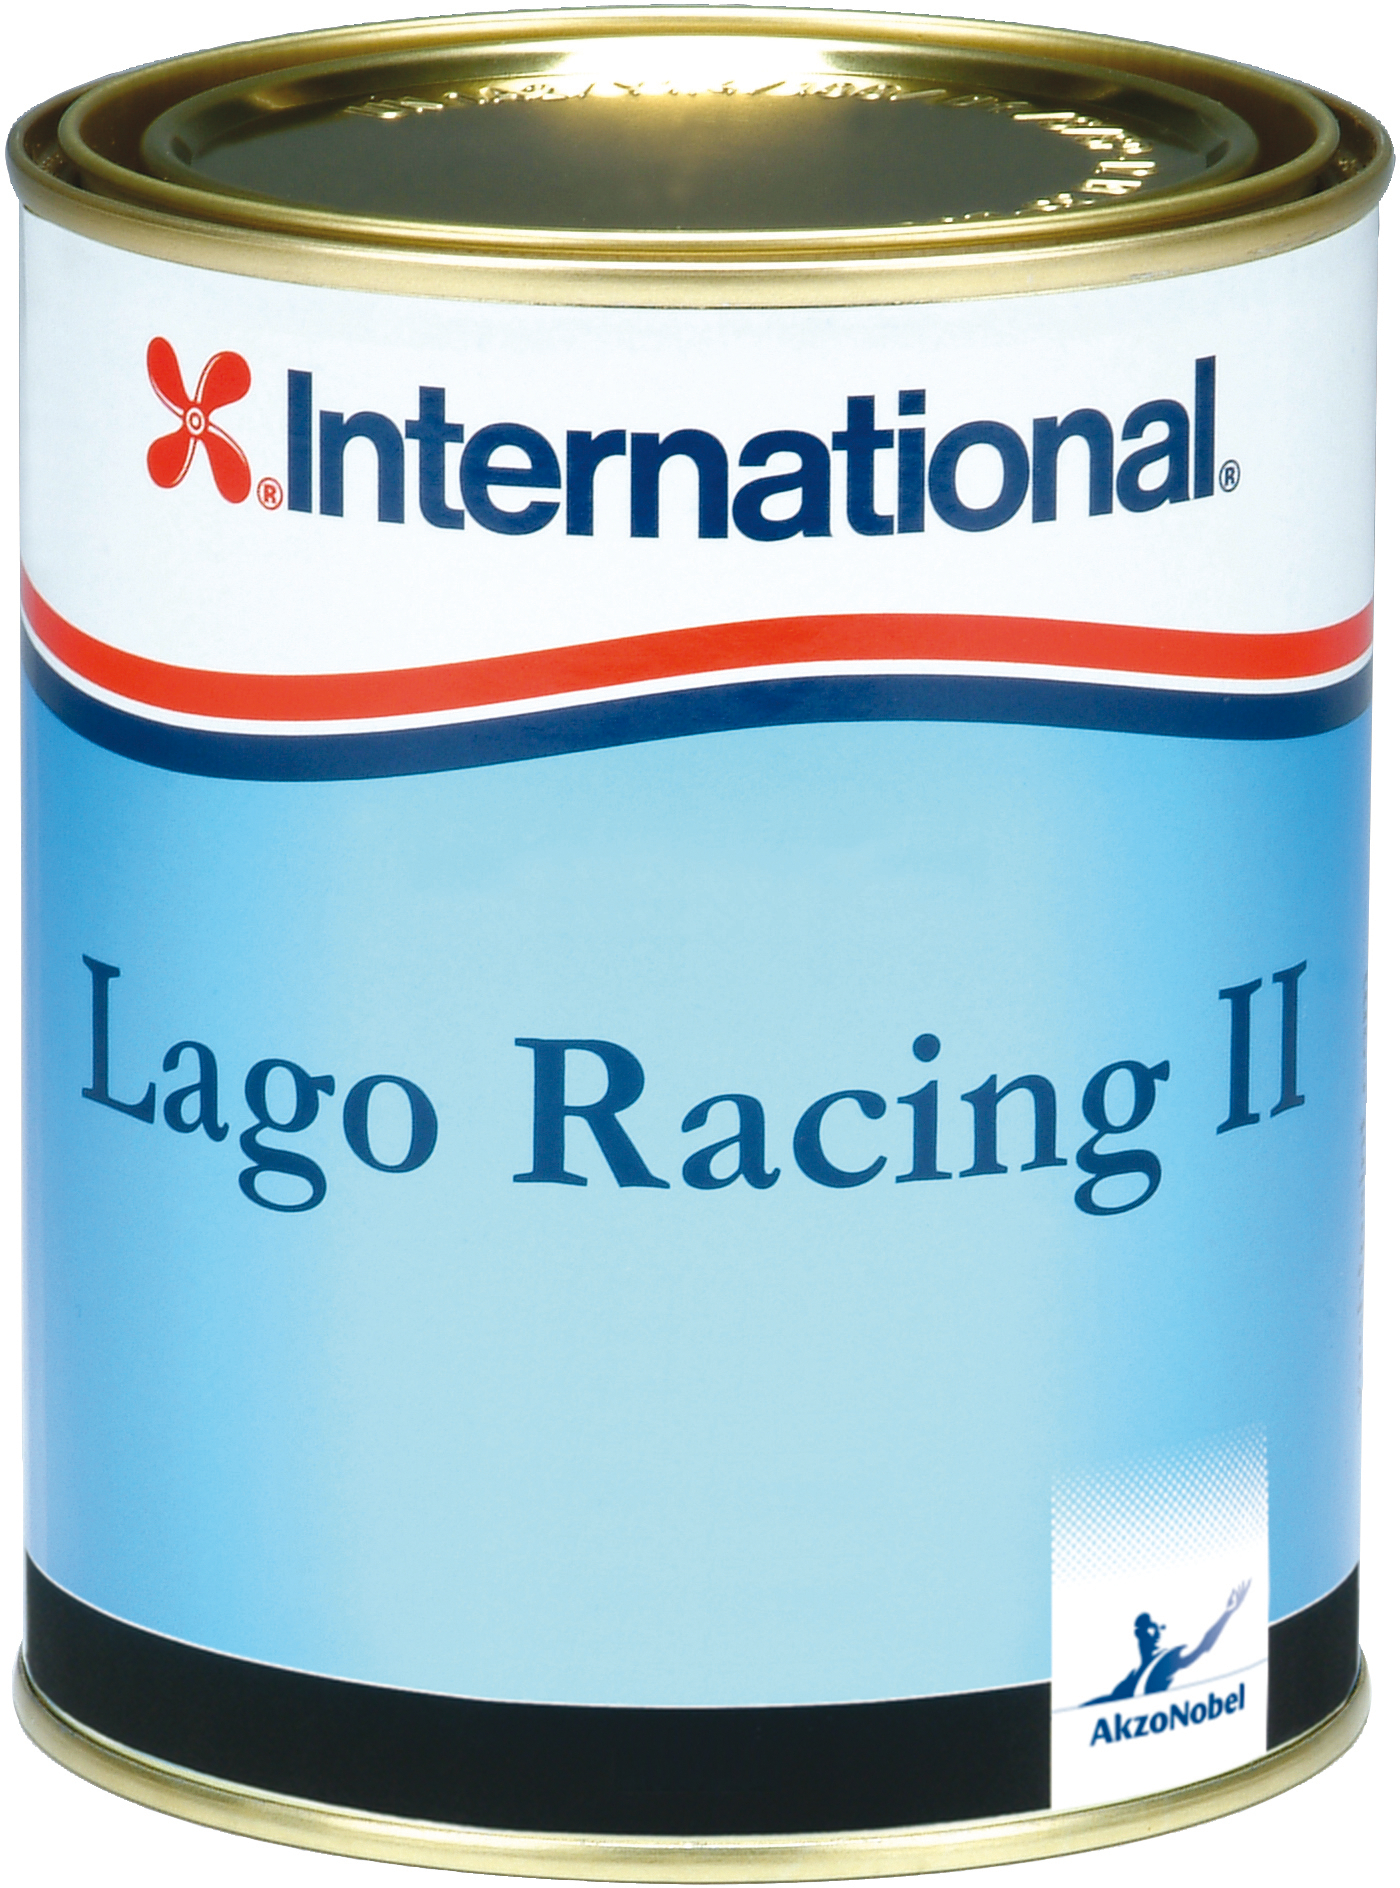 Lago racing ii vit 750 ml